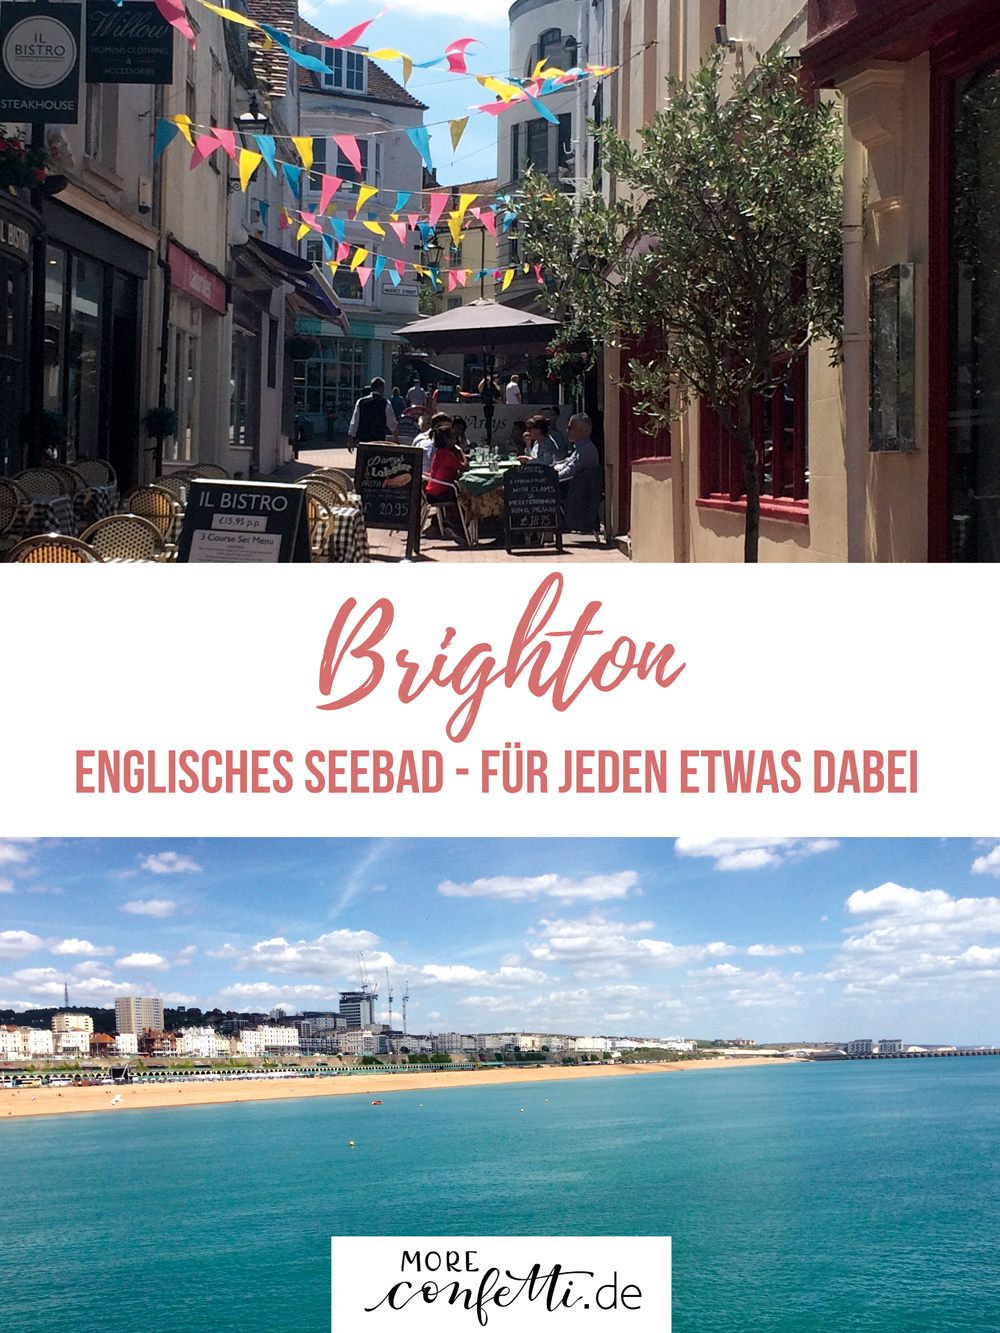 Brighton - englisches Seebad - für jeden etwas dabei - moreconfetti.de